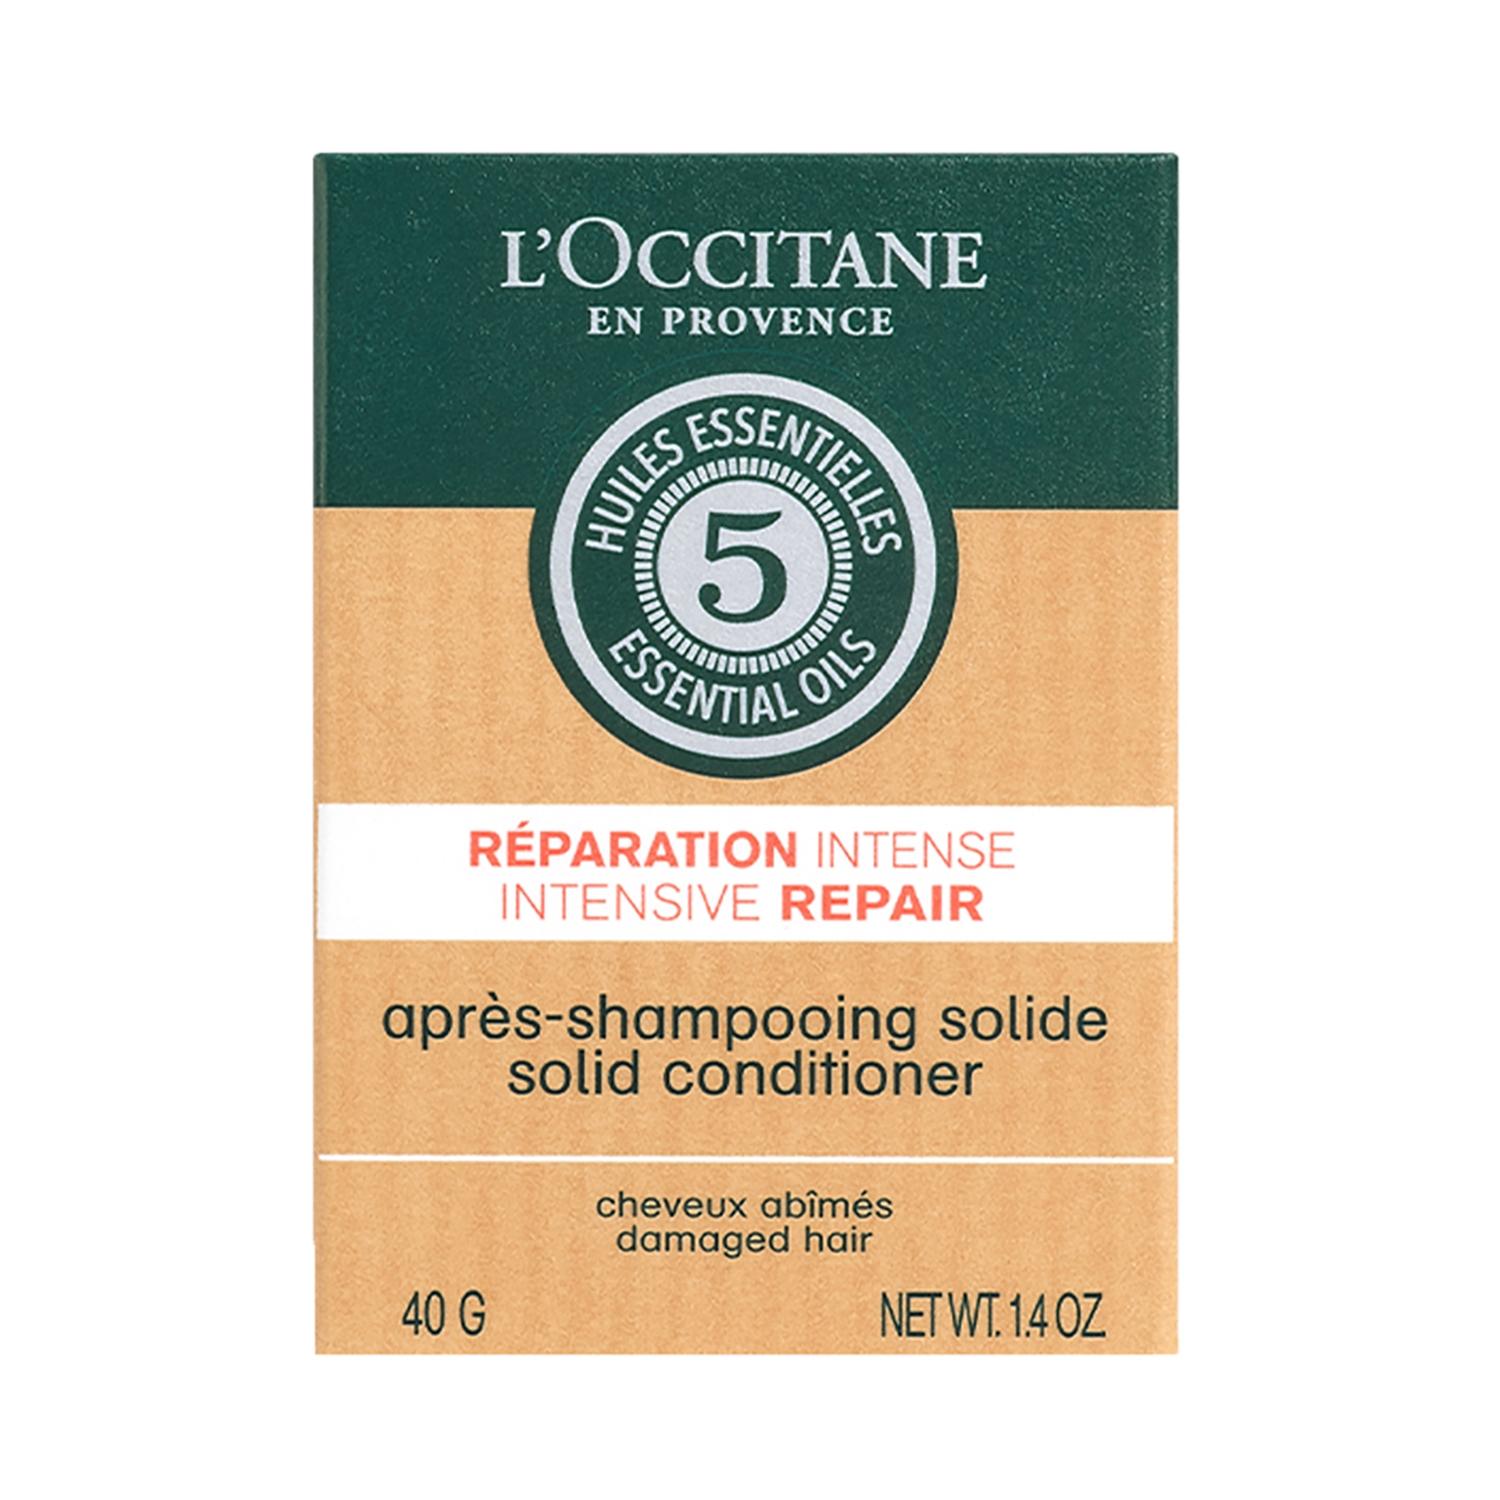 L'occitane Intensive Repair Solid Conditioner (40g)